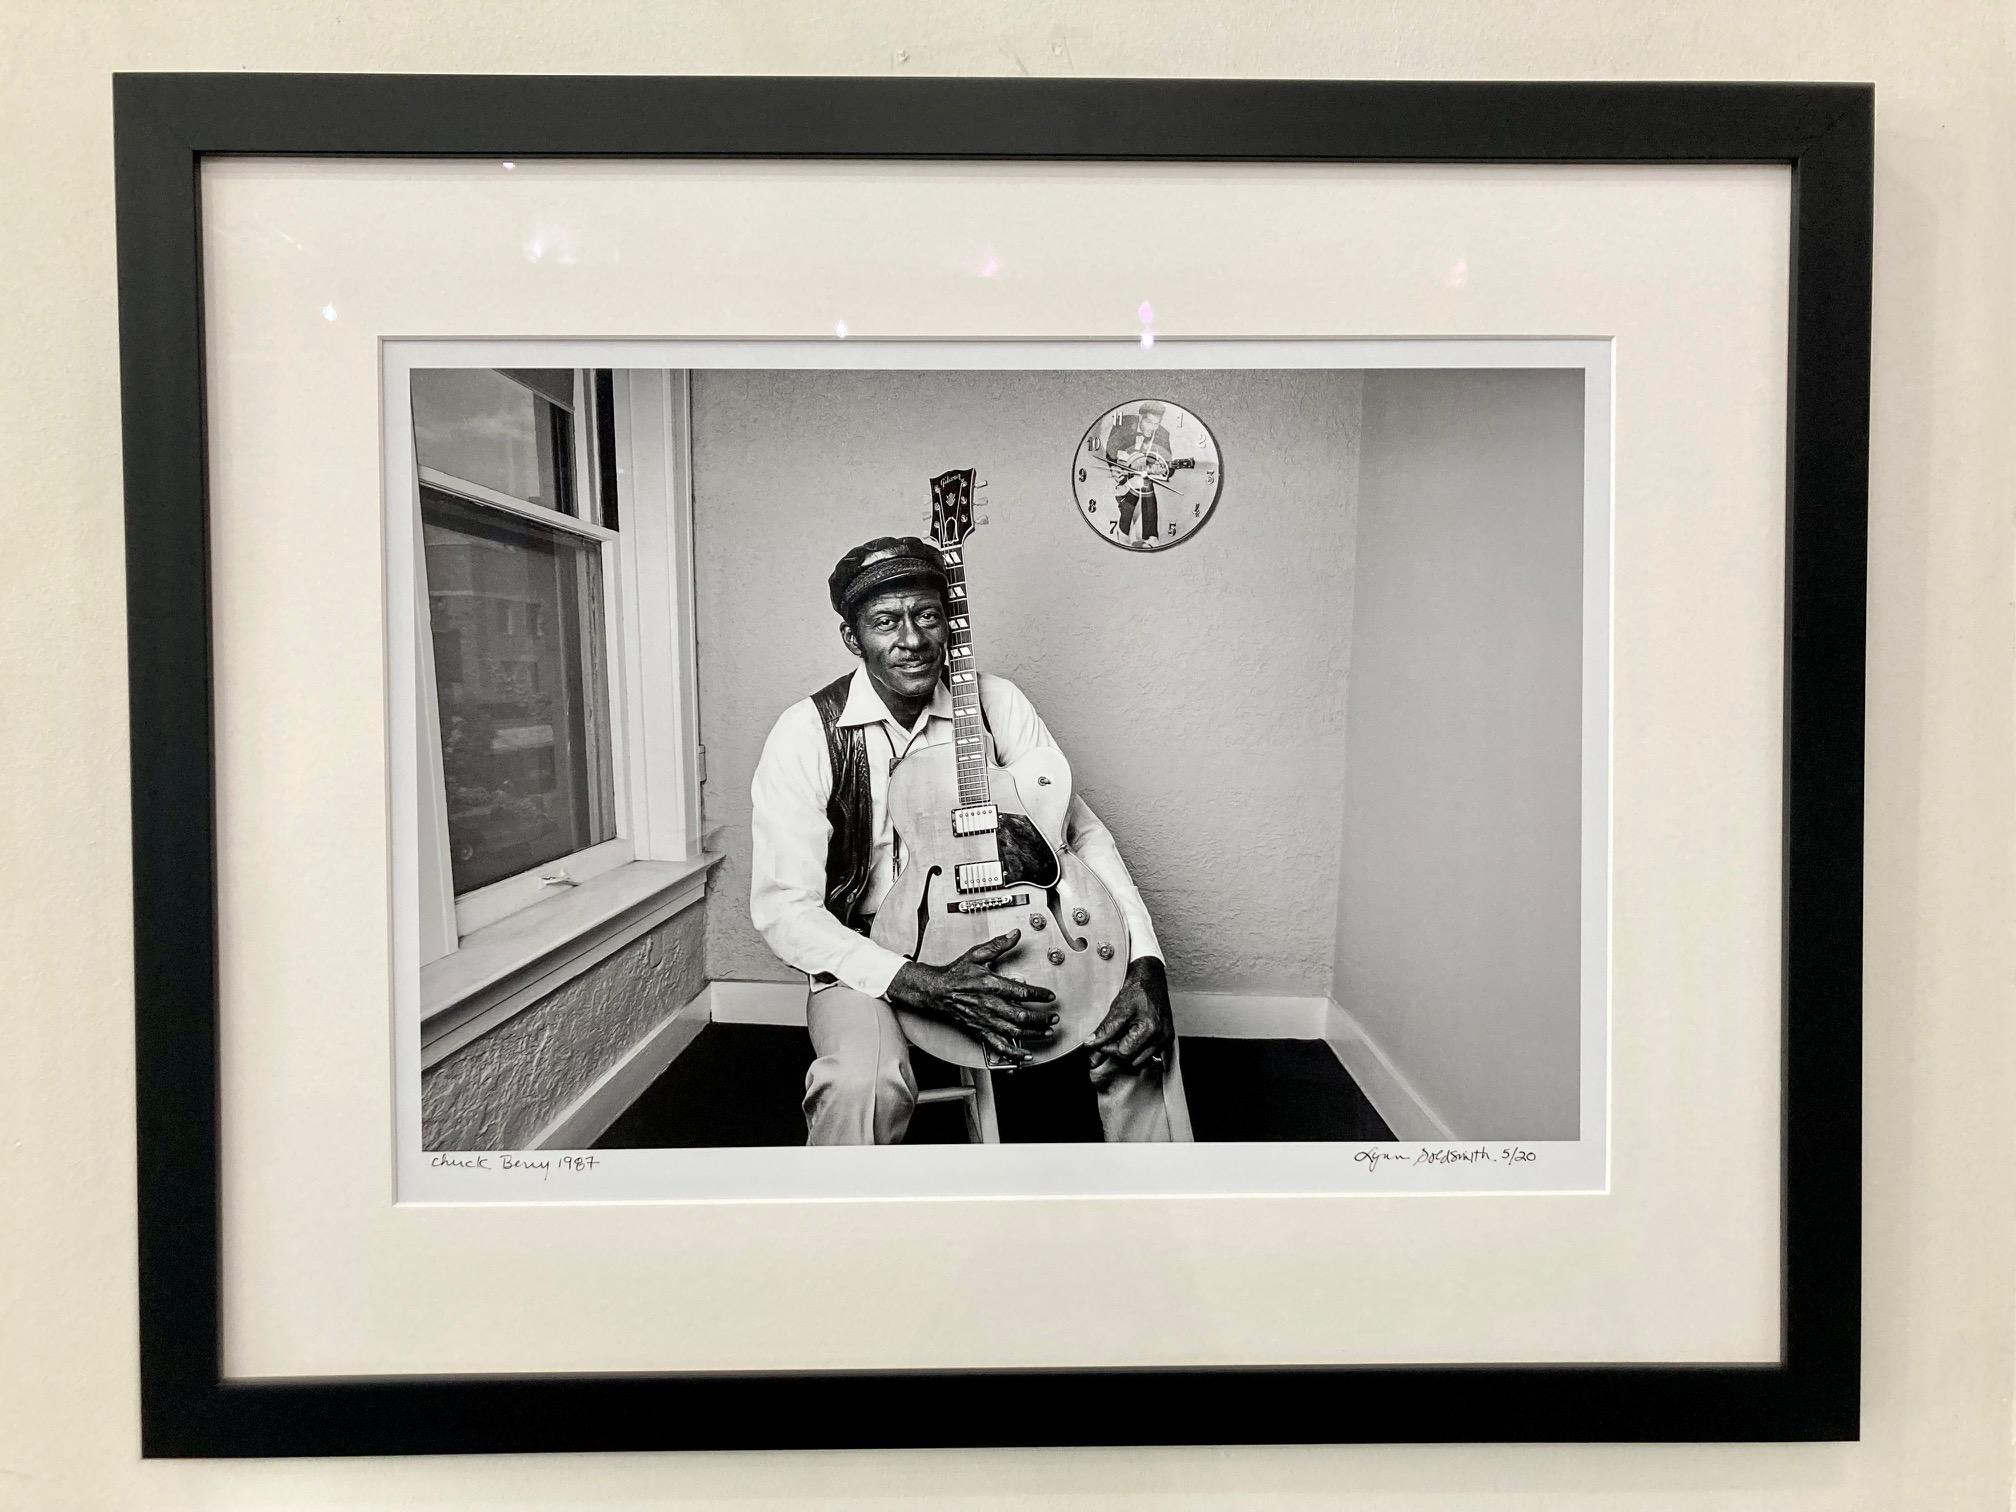 Chuck Berry von einem renommierten Fotografen. Lynn Goldsmith, aufgenommen im Jahr 1987

Gerahmter, signierter Druck in limitierter Auflage 16x20", Auflage #5/20 

Rahmen misst 28" hoch x 22,5" breit x 1" dick

Individuell gerahmt mit schwarzem